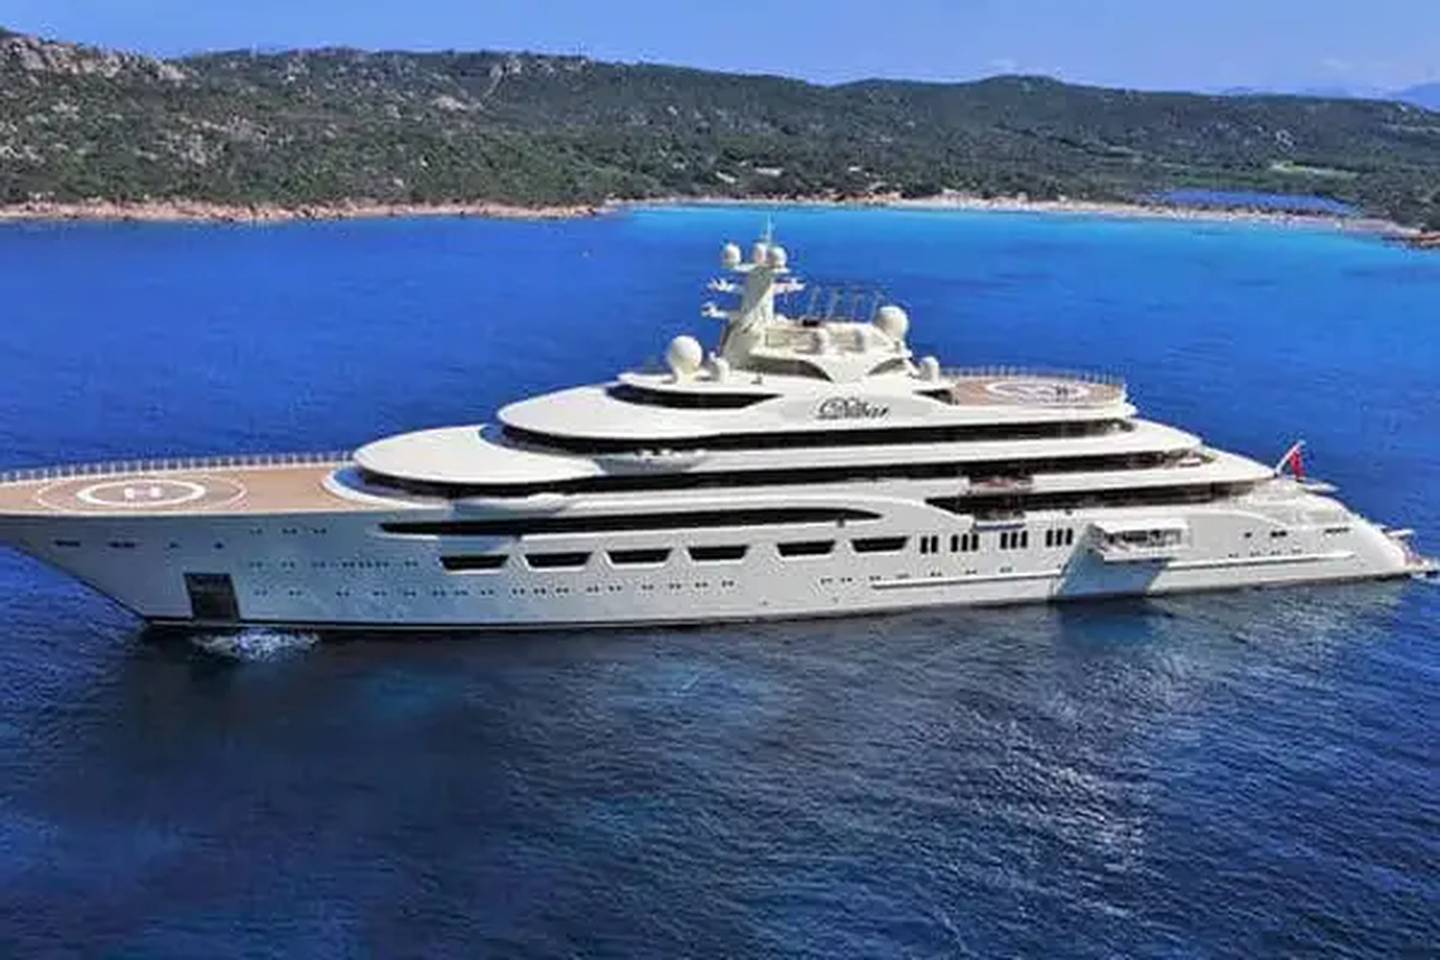 El oligarca ruso Alisher Umanov es propietario de esta embarcación